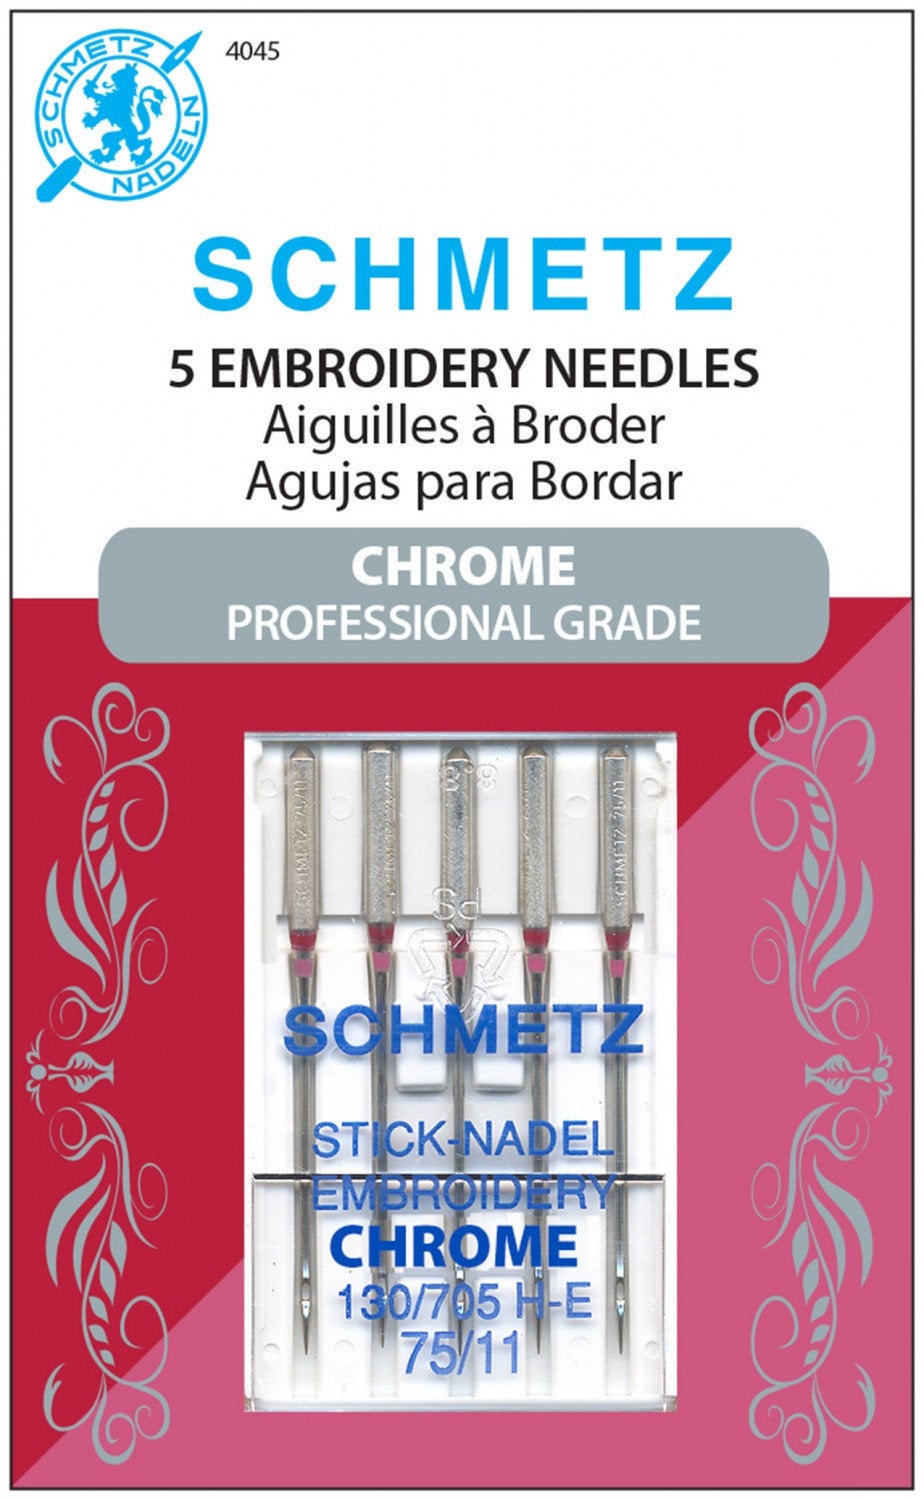 Chrome Embroidery Schmetz Needle 5 ct, Size 75/11, # 4045